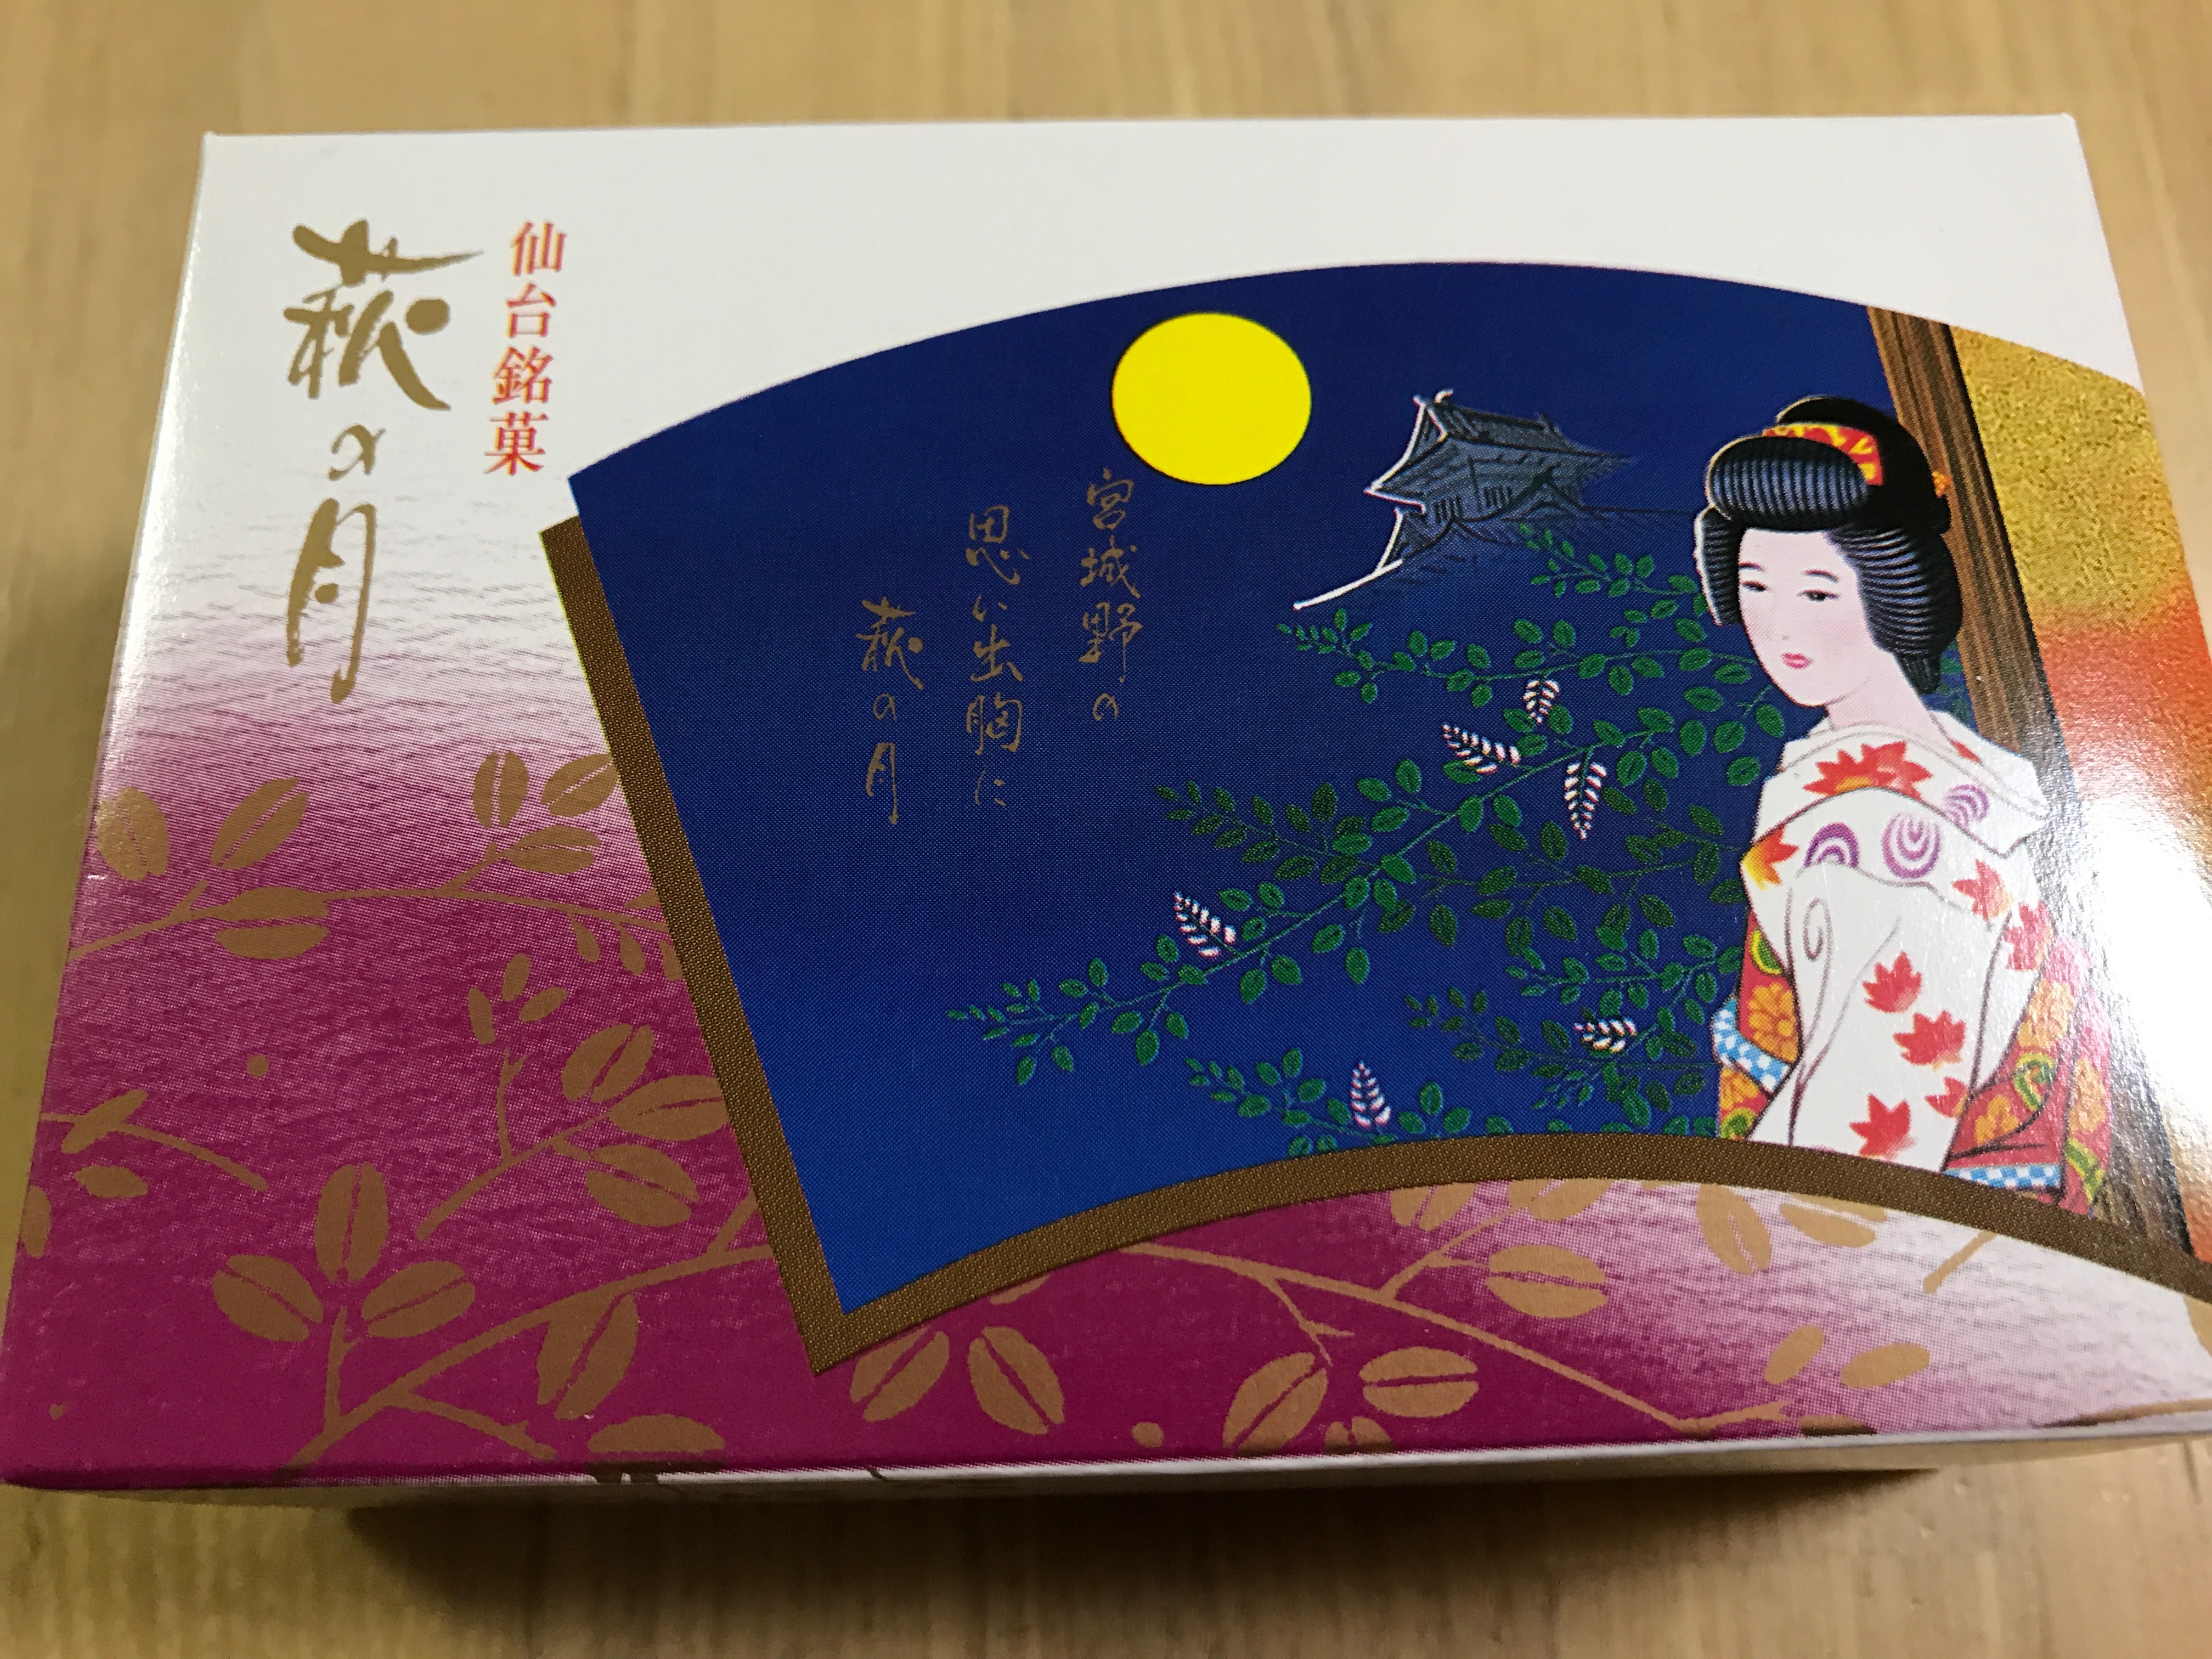 仙台銘菓「萩の月」は、仙台に行くと必ず行くと買ってしまうヨギーニママの大好物